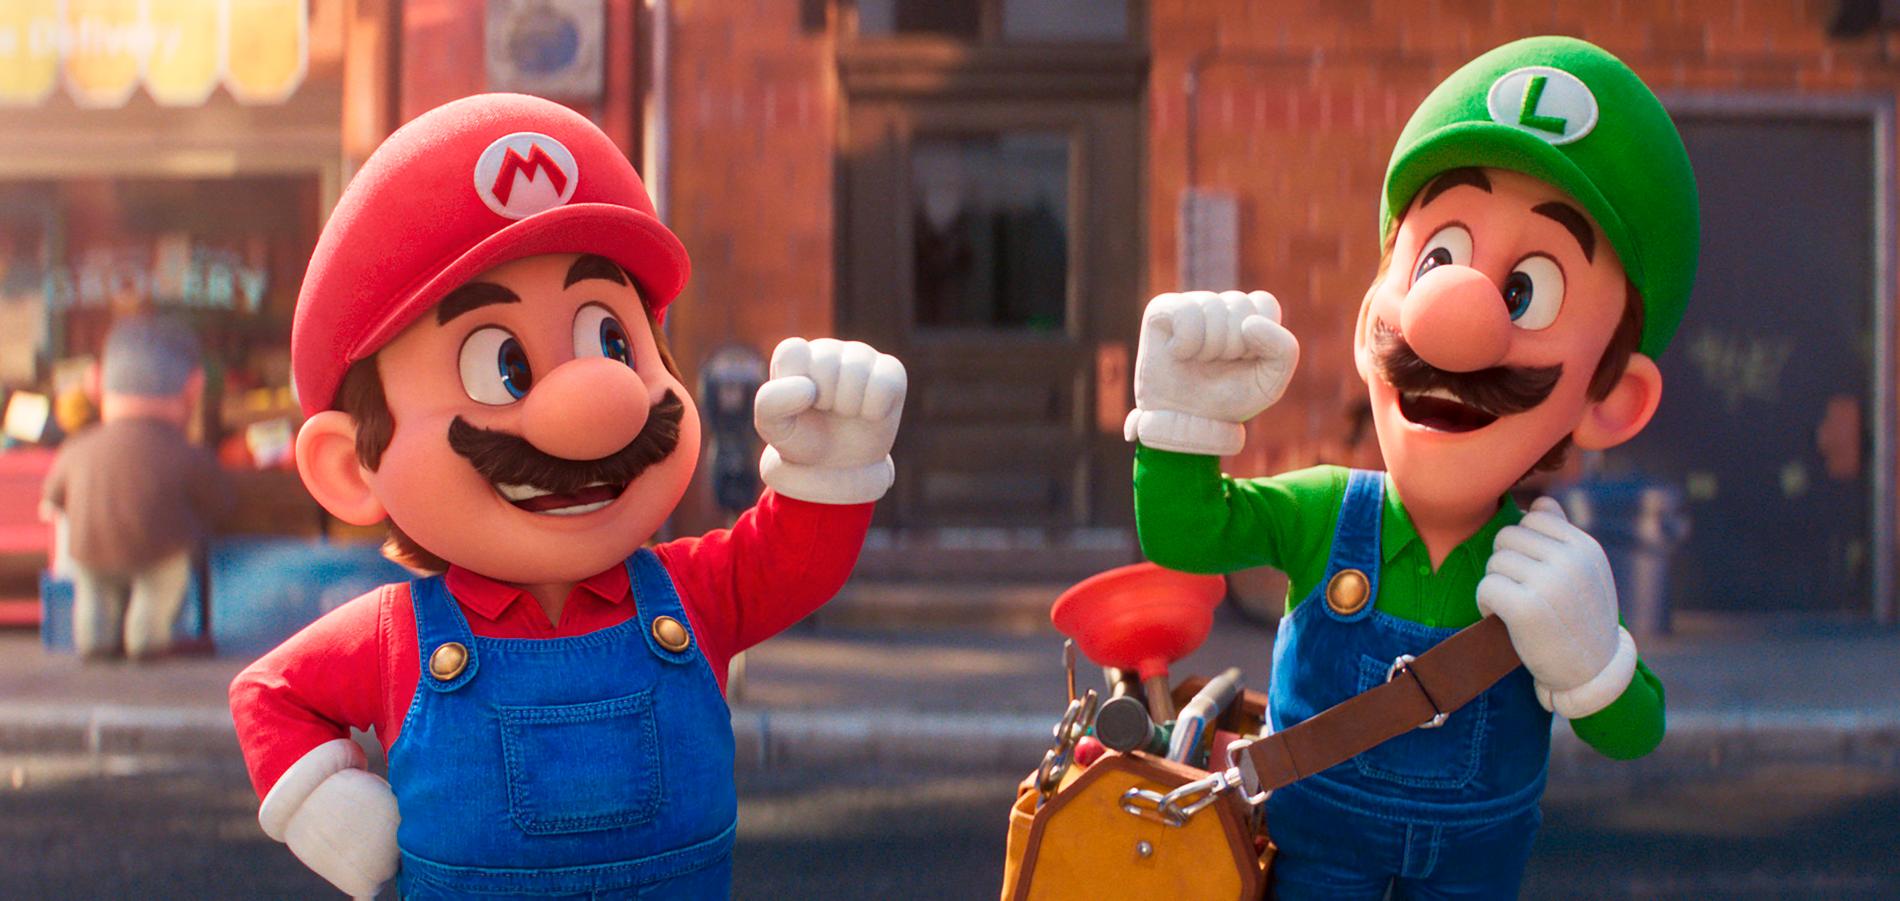 Mario och Luigi i filmen. Pressbild